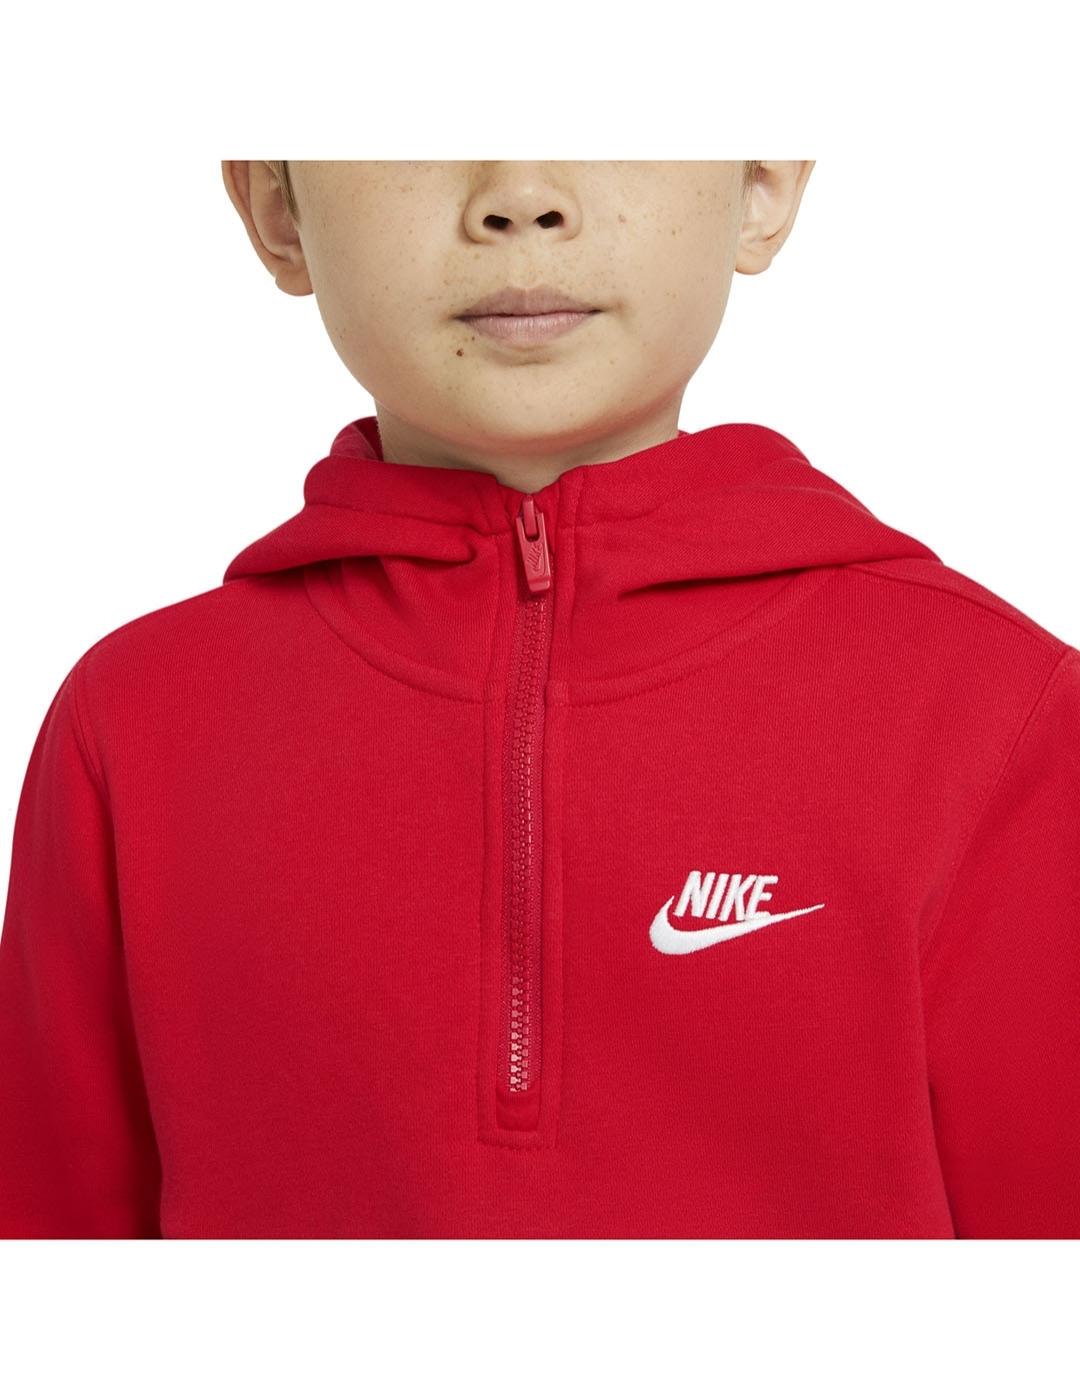 Sudadera Nike Rojo Niño